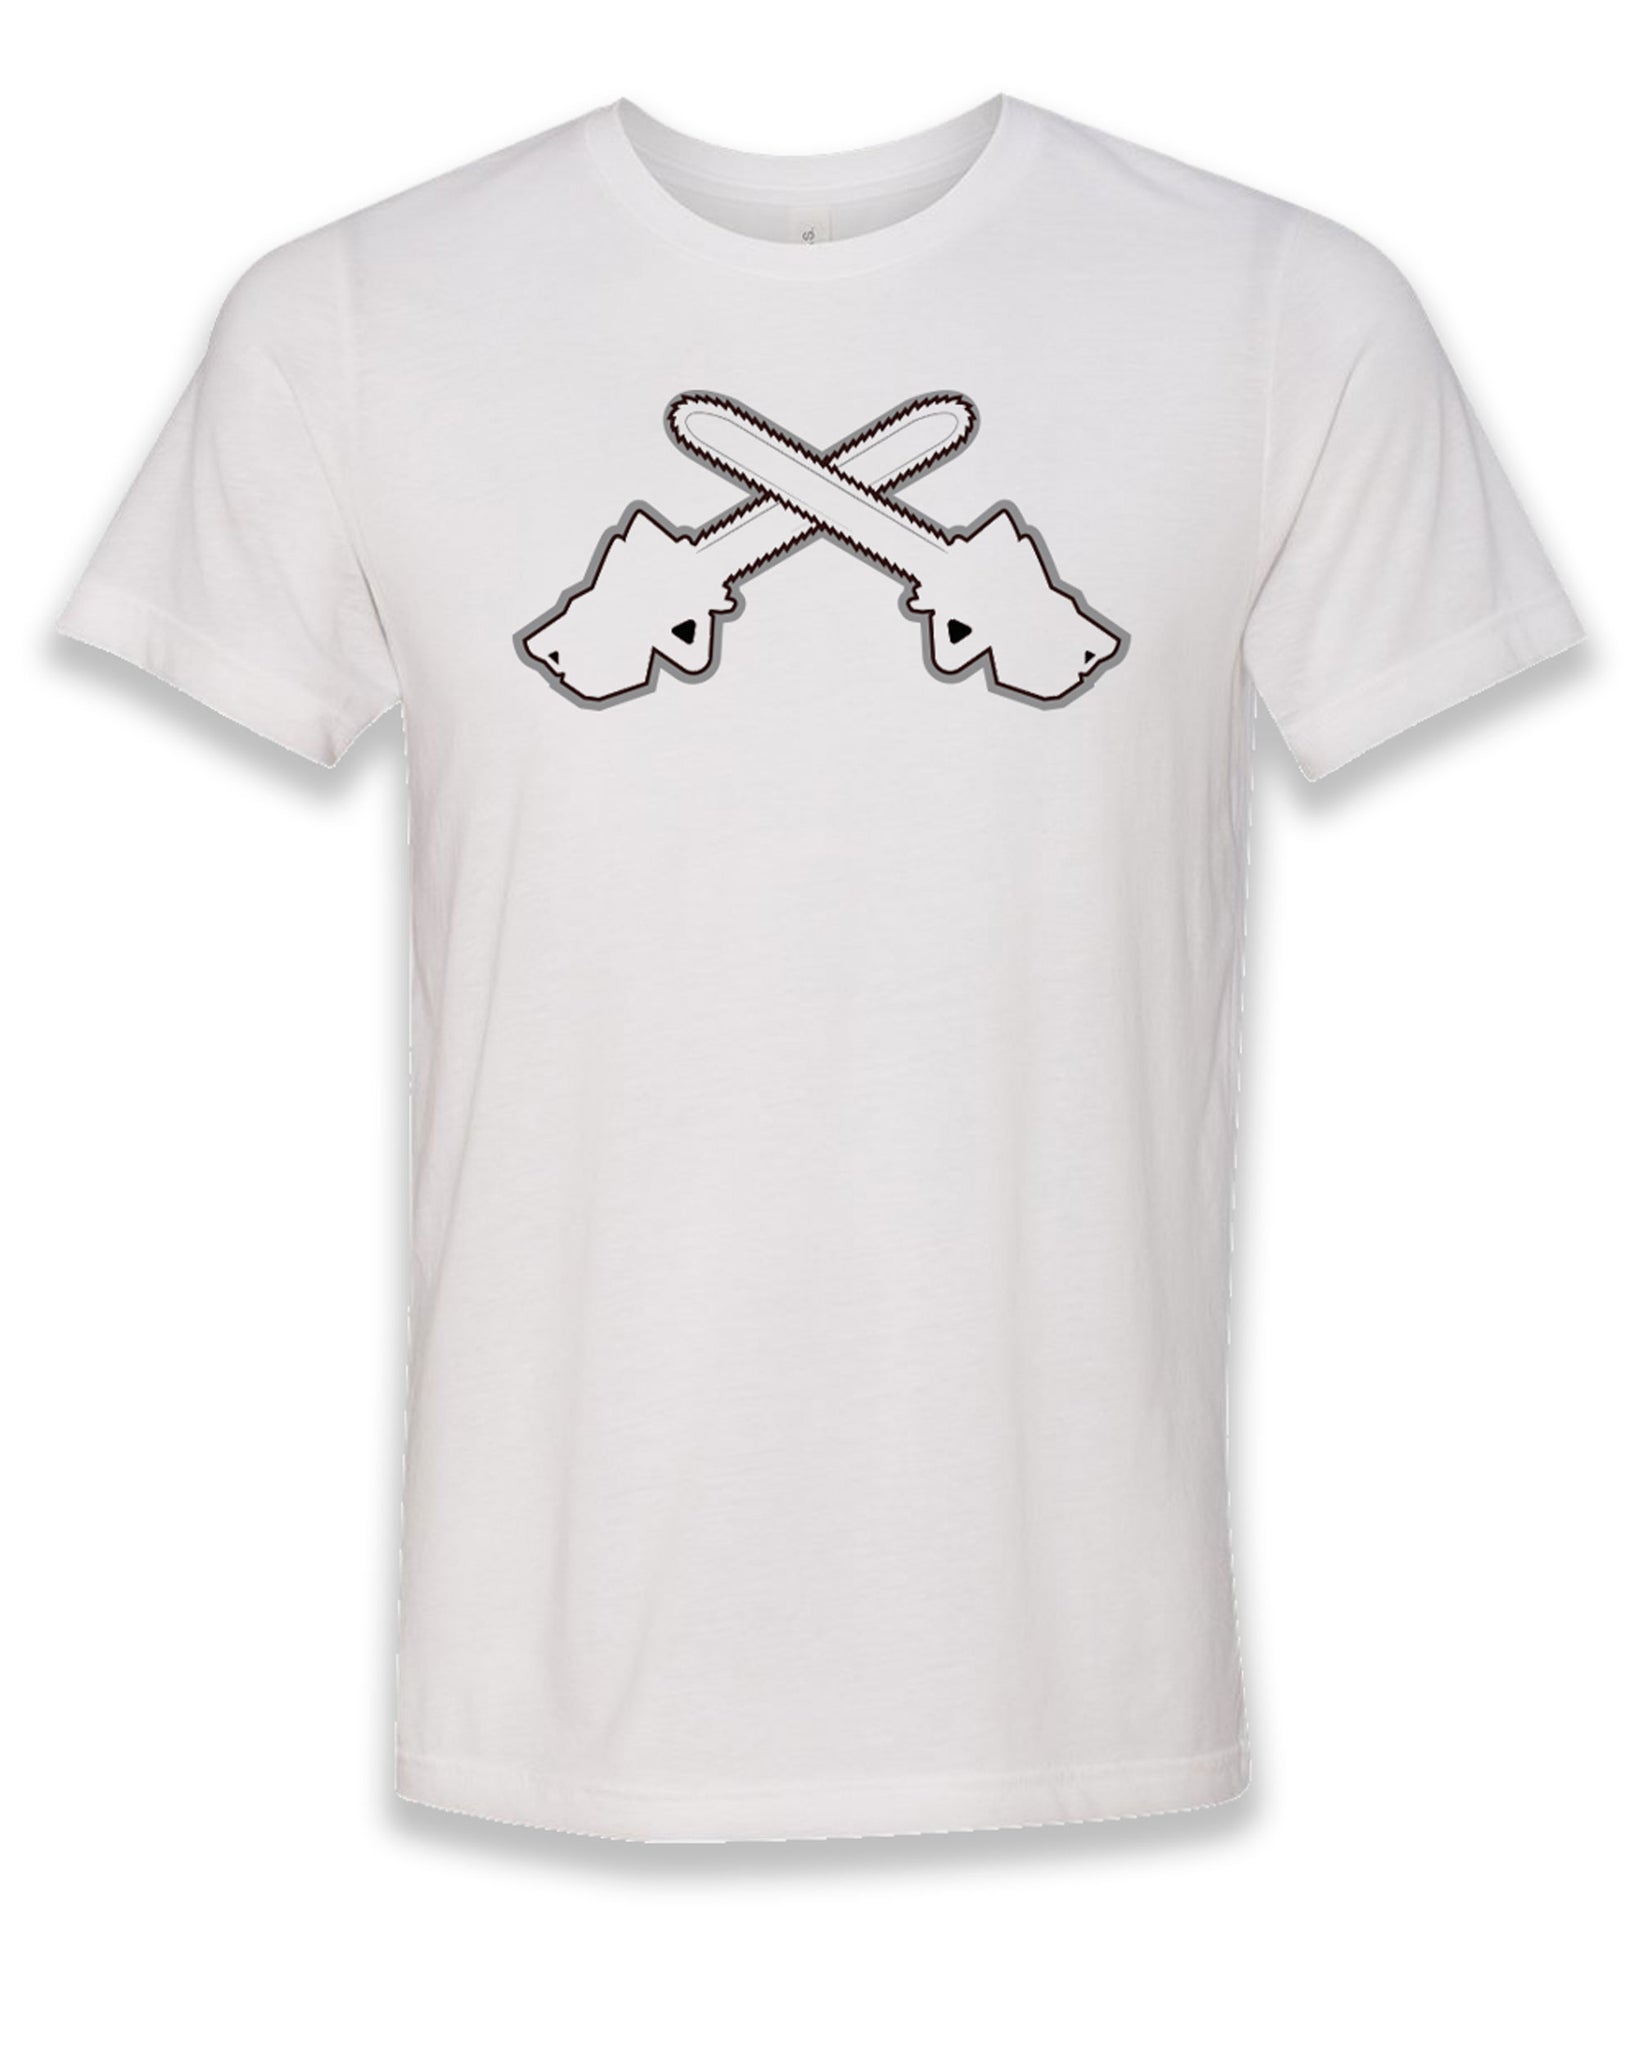 Sharknado Chainsaws T-shirt